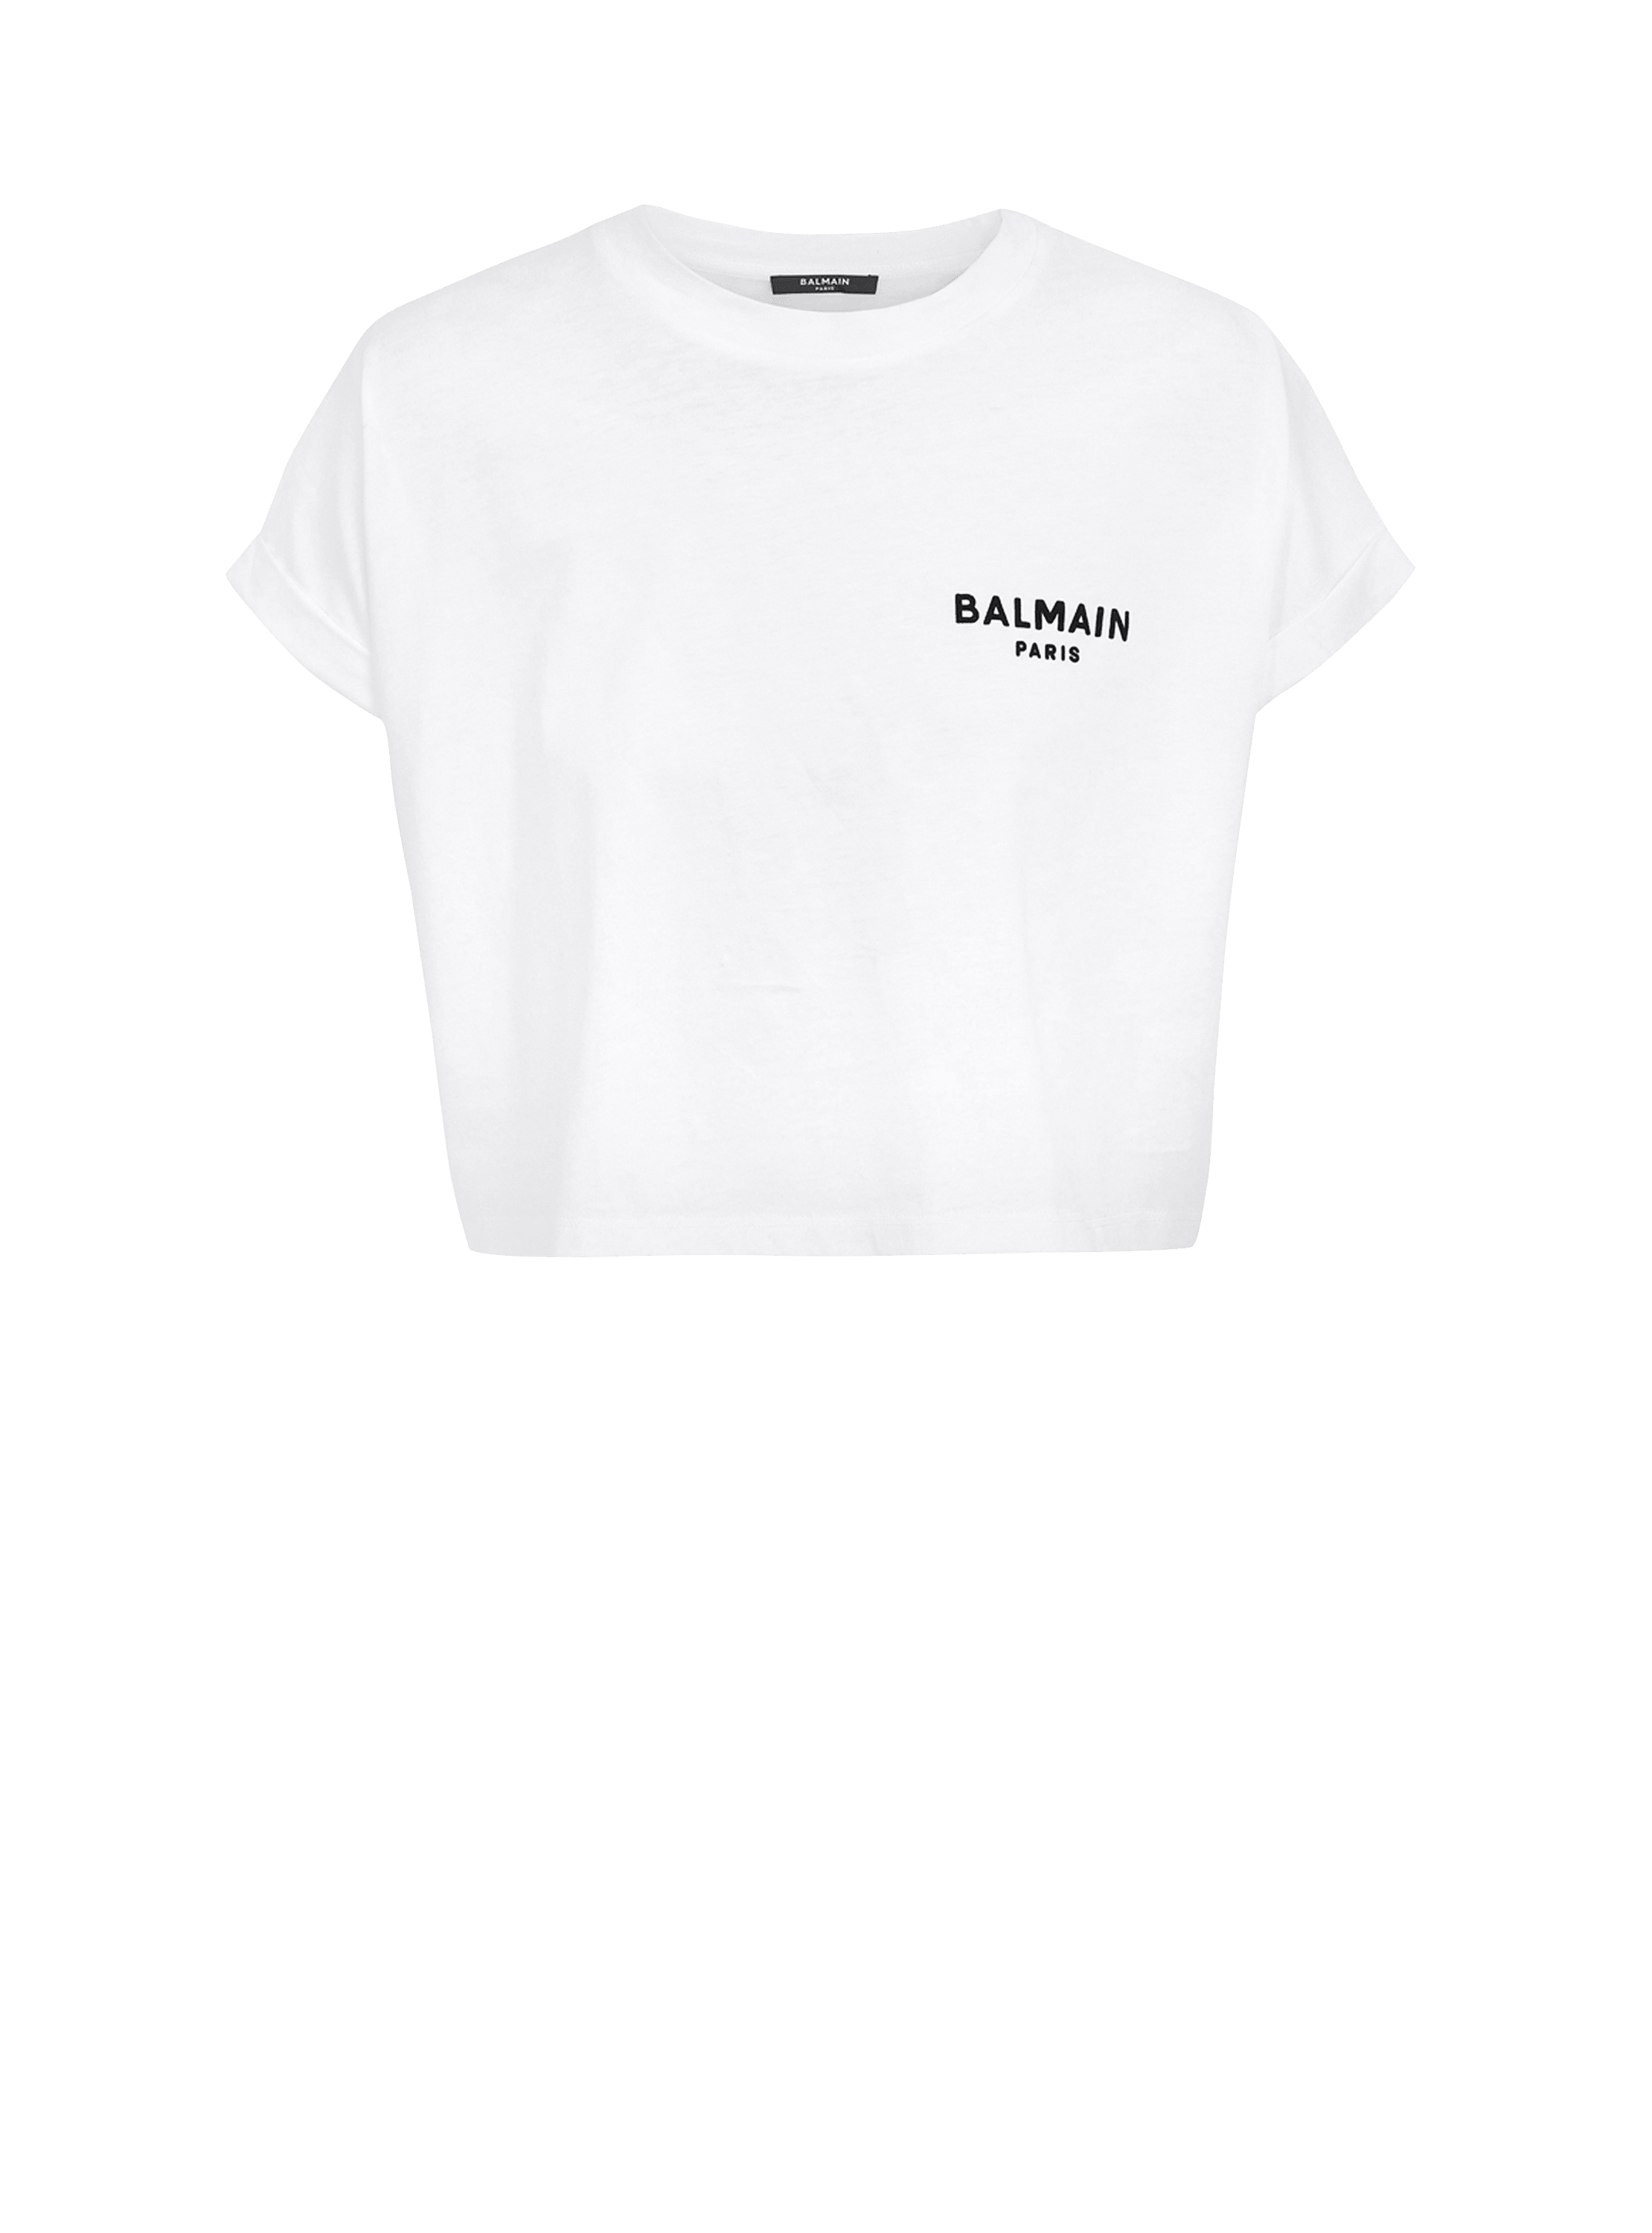 Flocked Balmain Paris cropped T-Shirt, white, hi-res